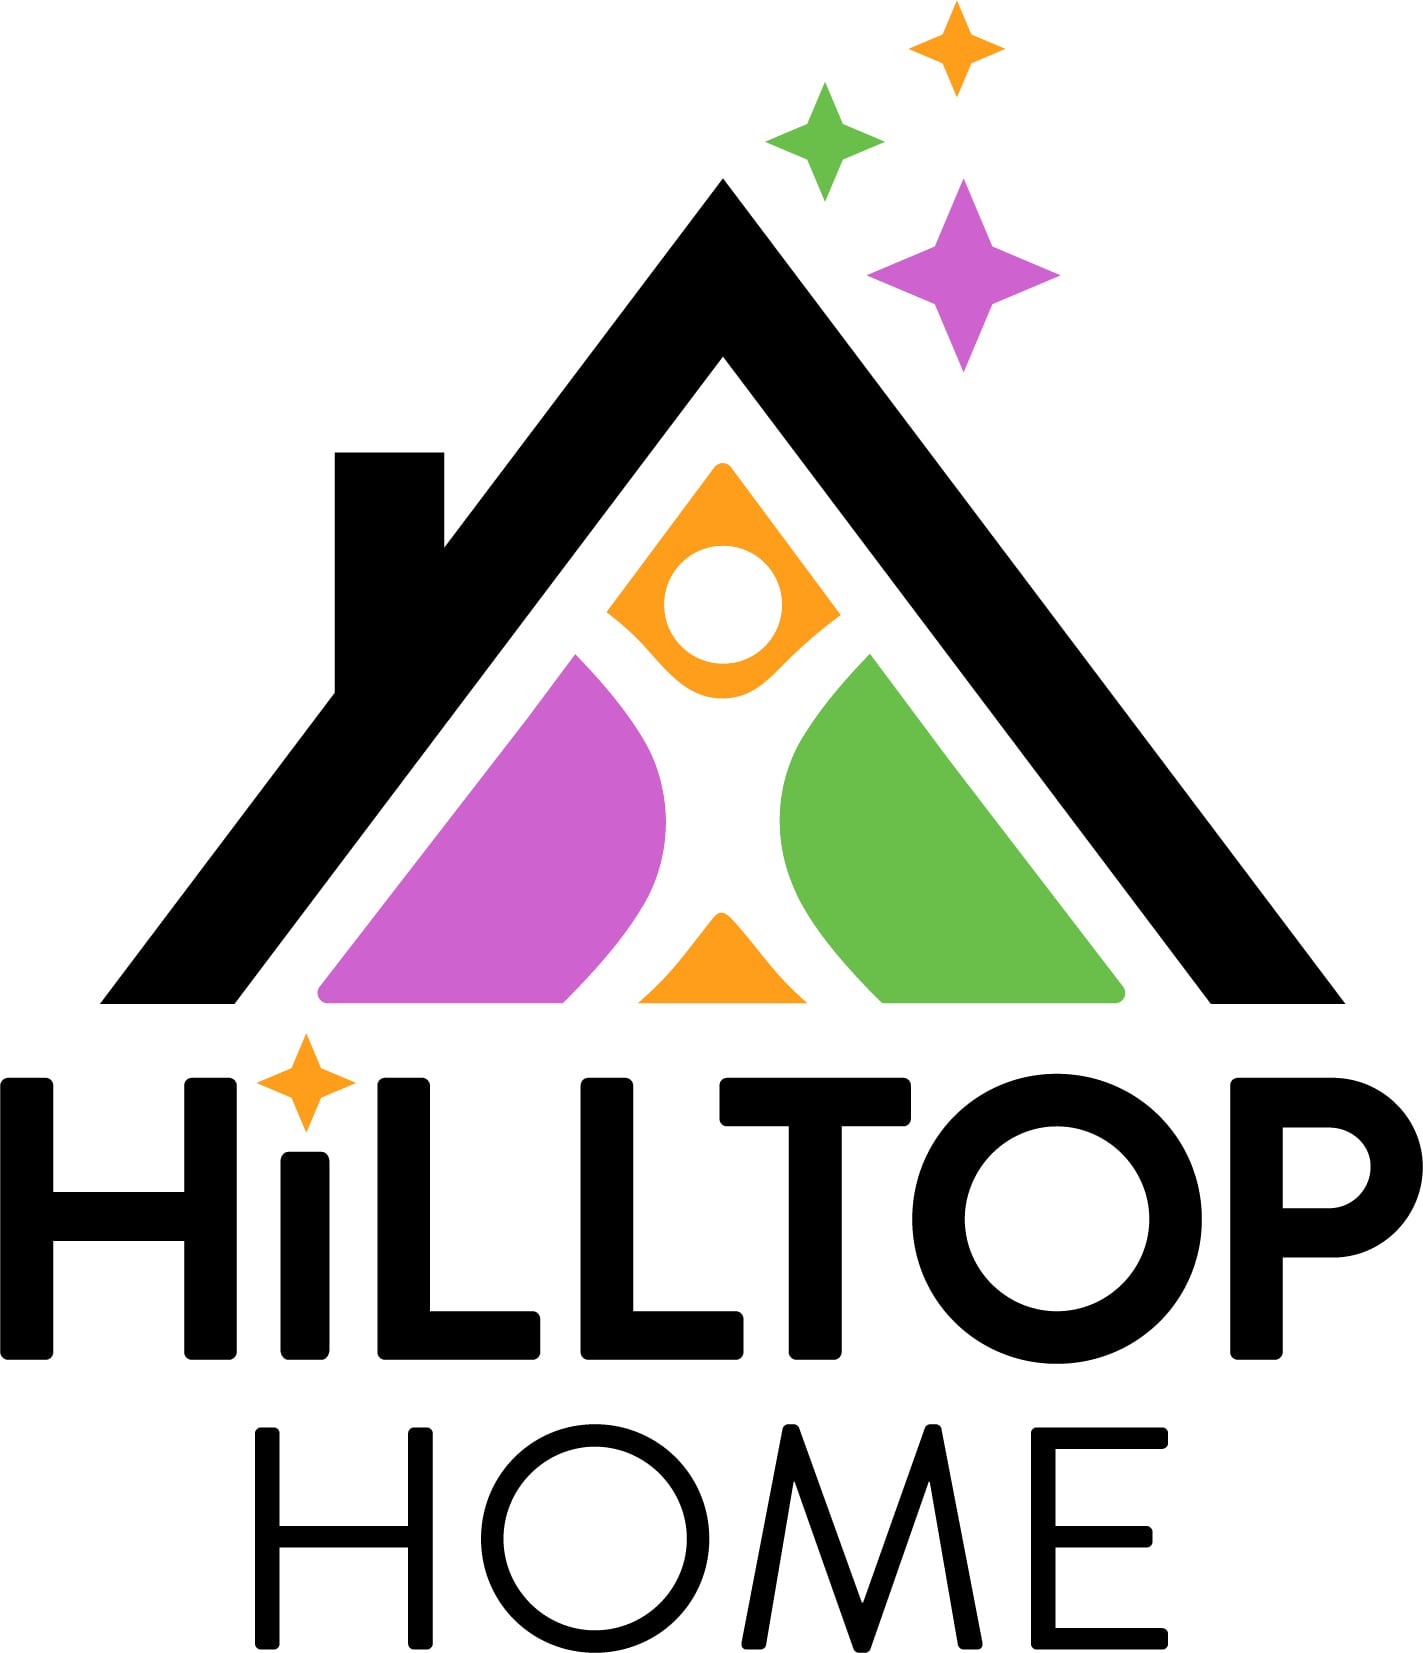 Hilltop Home logo.